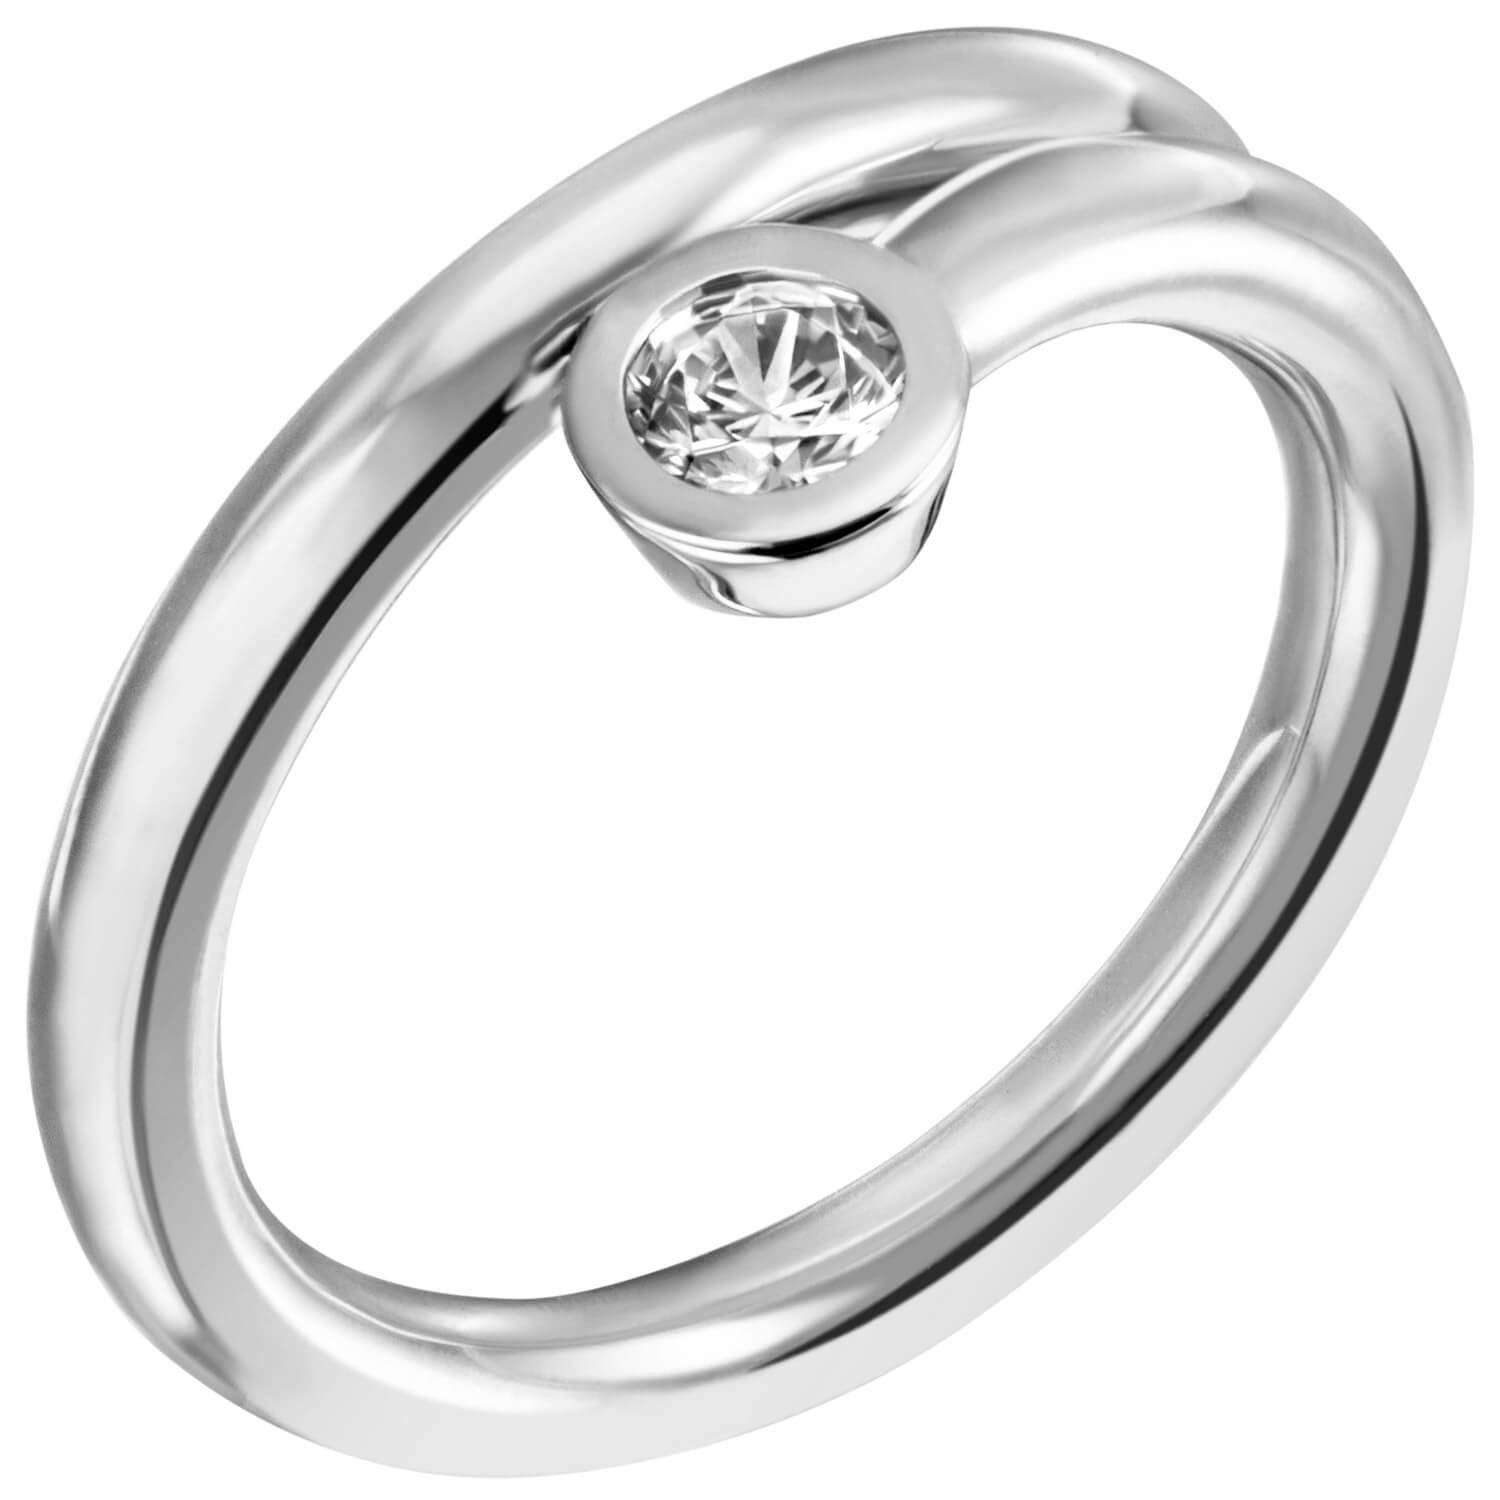 Schmuck Krone Silberring Solitär Ring 925 schlicht, weiß Silber 925 Silber spiralförmig Damenring Zirkonia mit